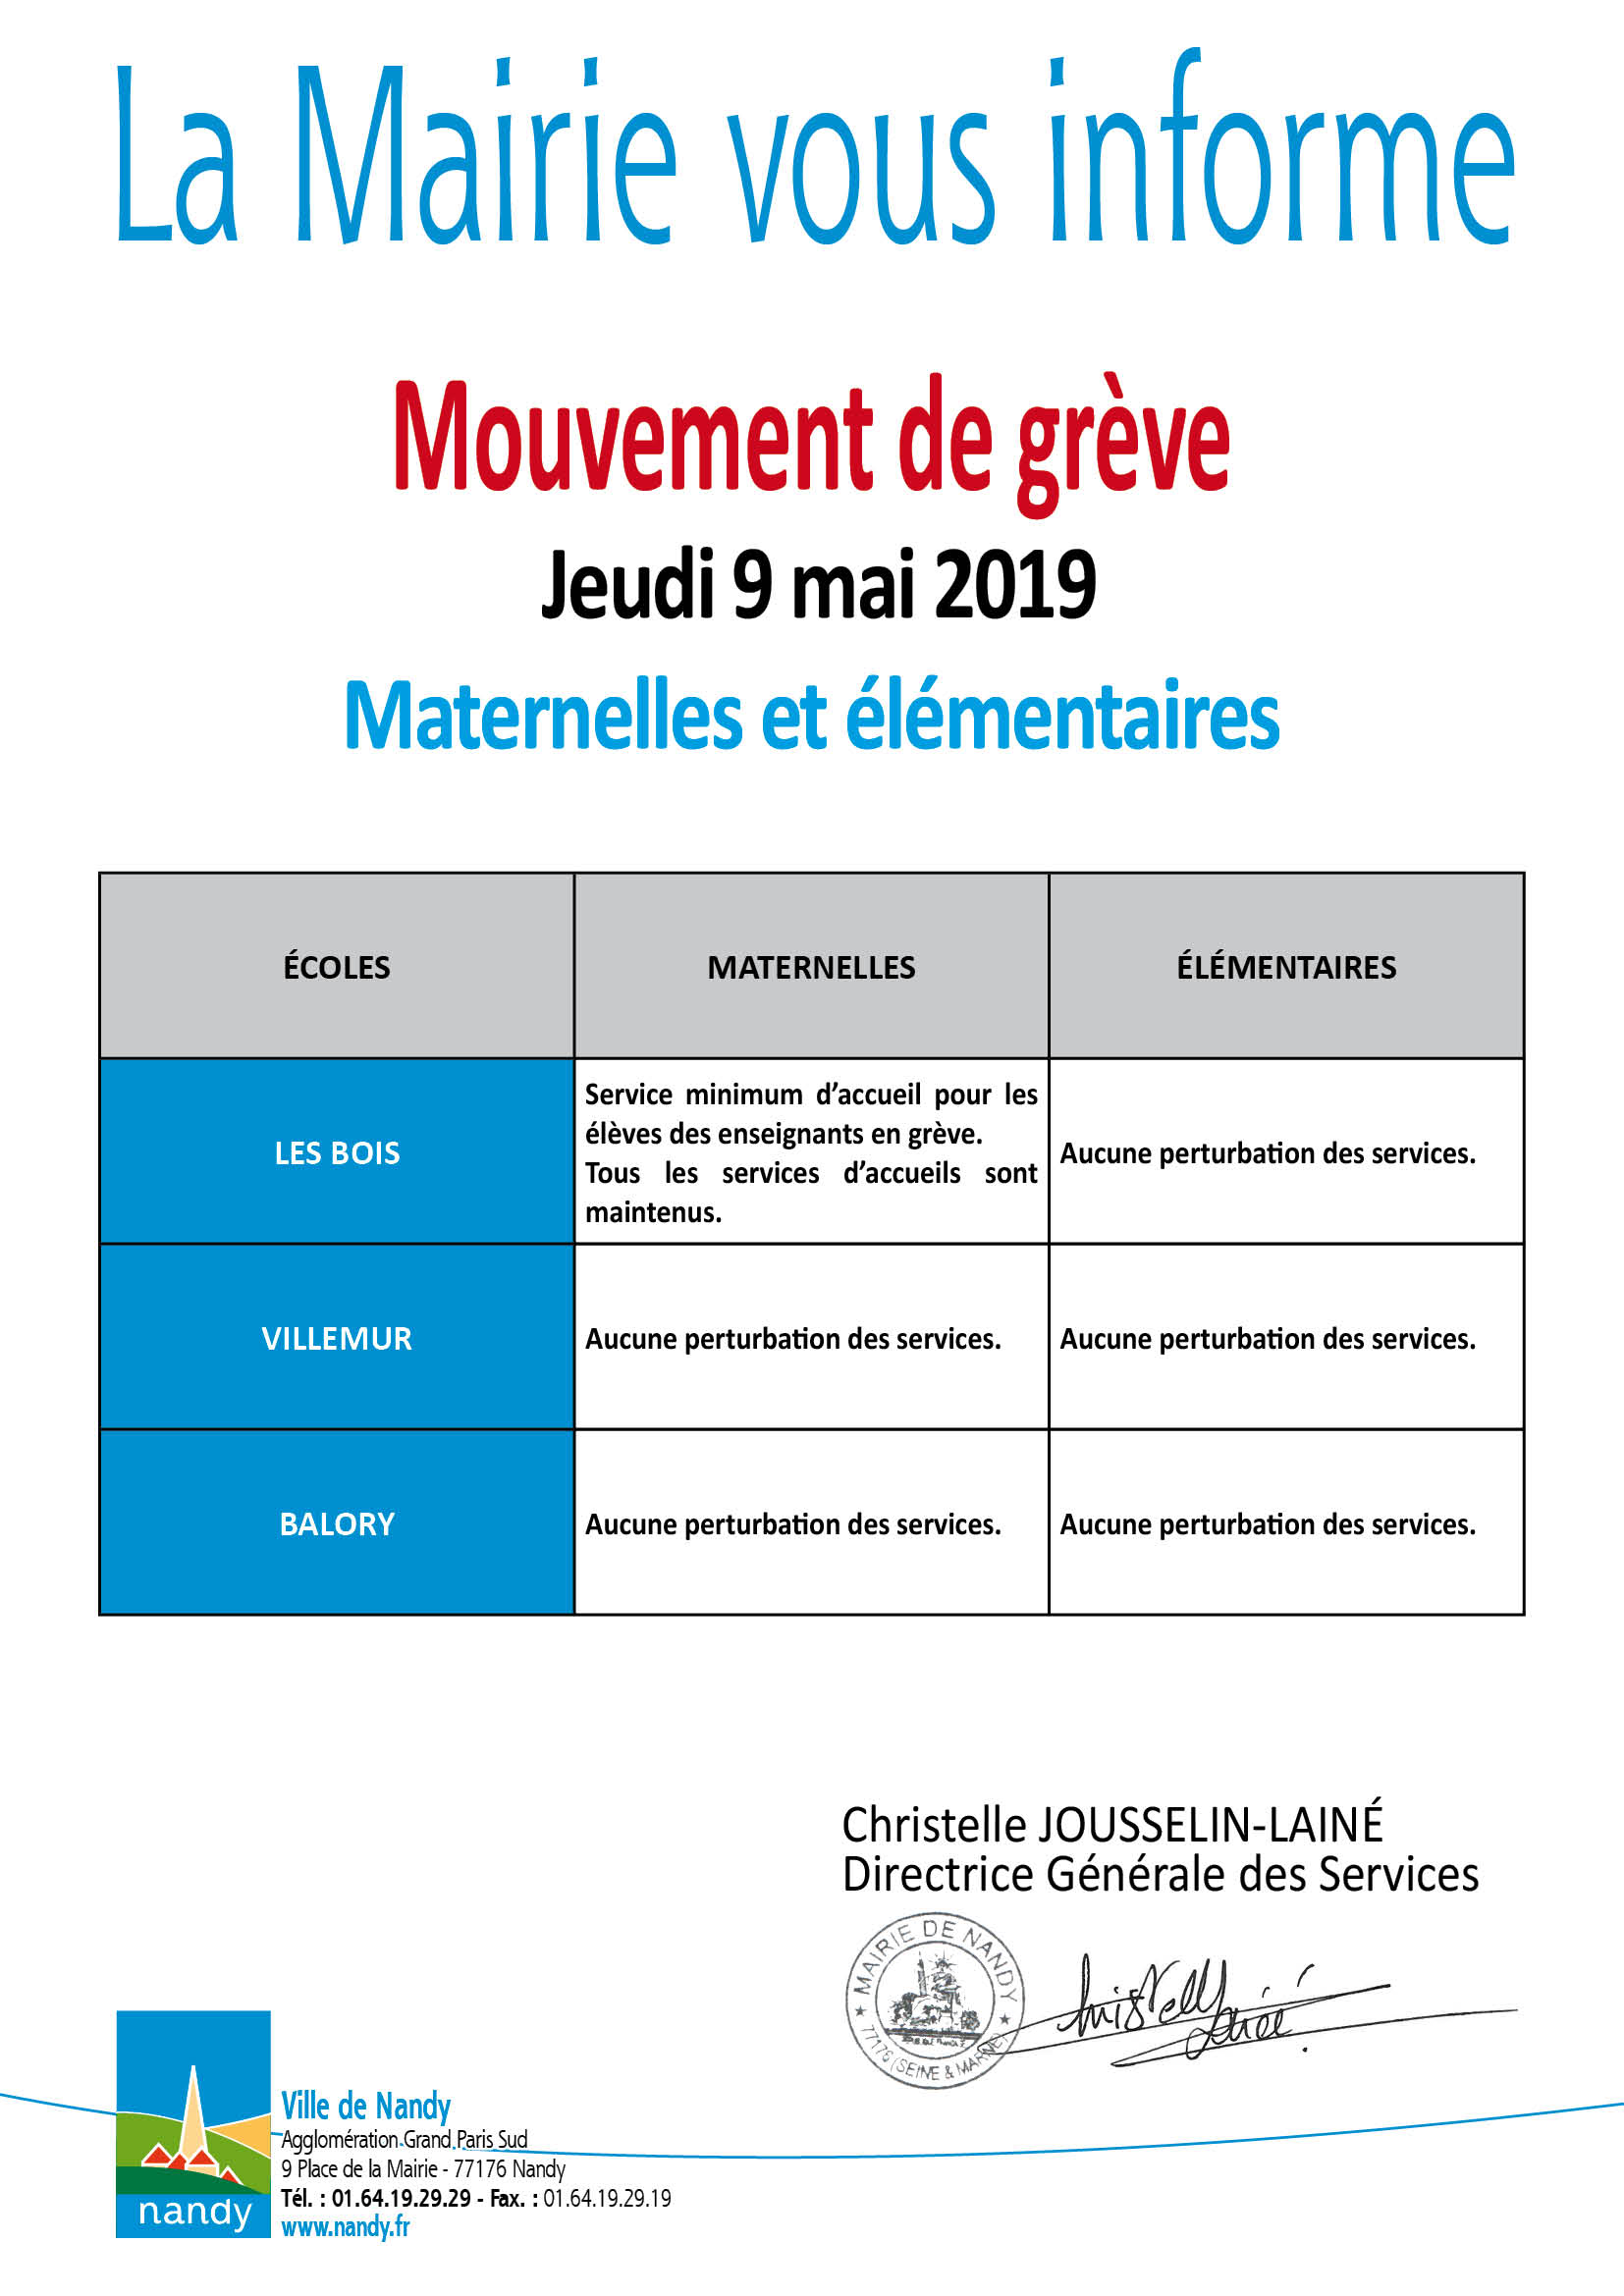 La Mairie vous informe grève mardi 9 mai 2019